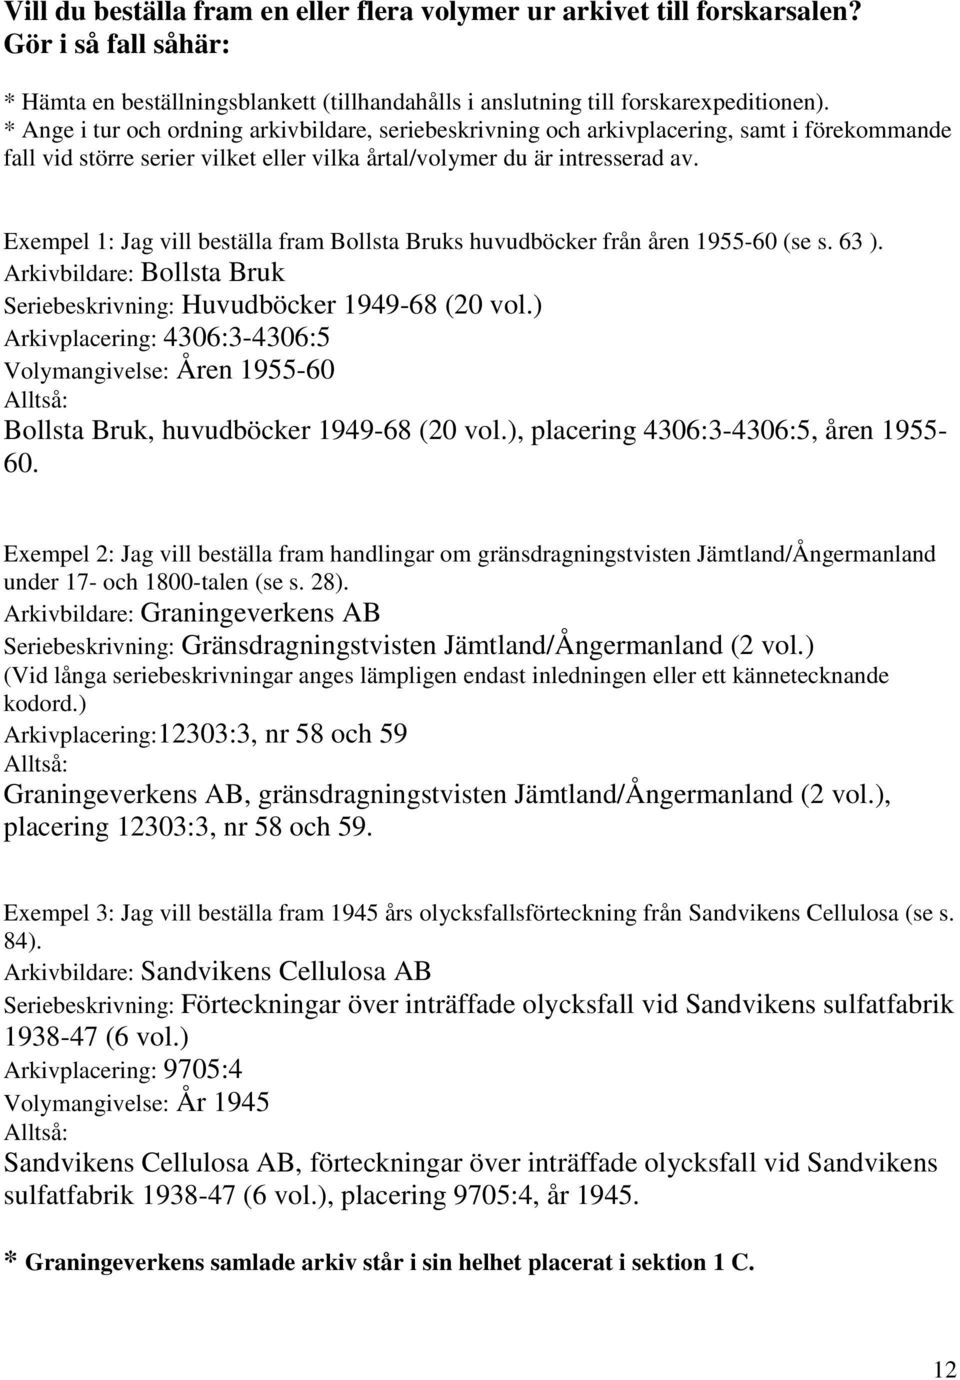 Exempel 1: Jag vill beställa fram Bollsta Bruks huvudböcker från åren 1955-60 (se s. 63 ). Arkivbildare: Bollsta Bruk Seriebeskrivning: Huvudböcker 1949-68 (20 vol.